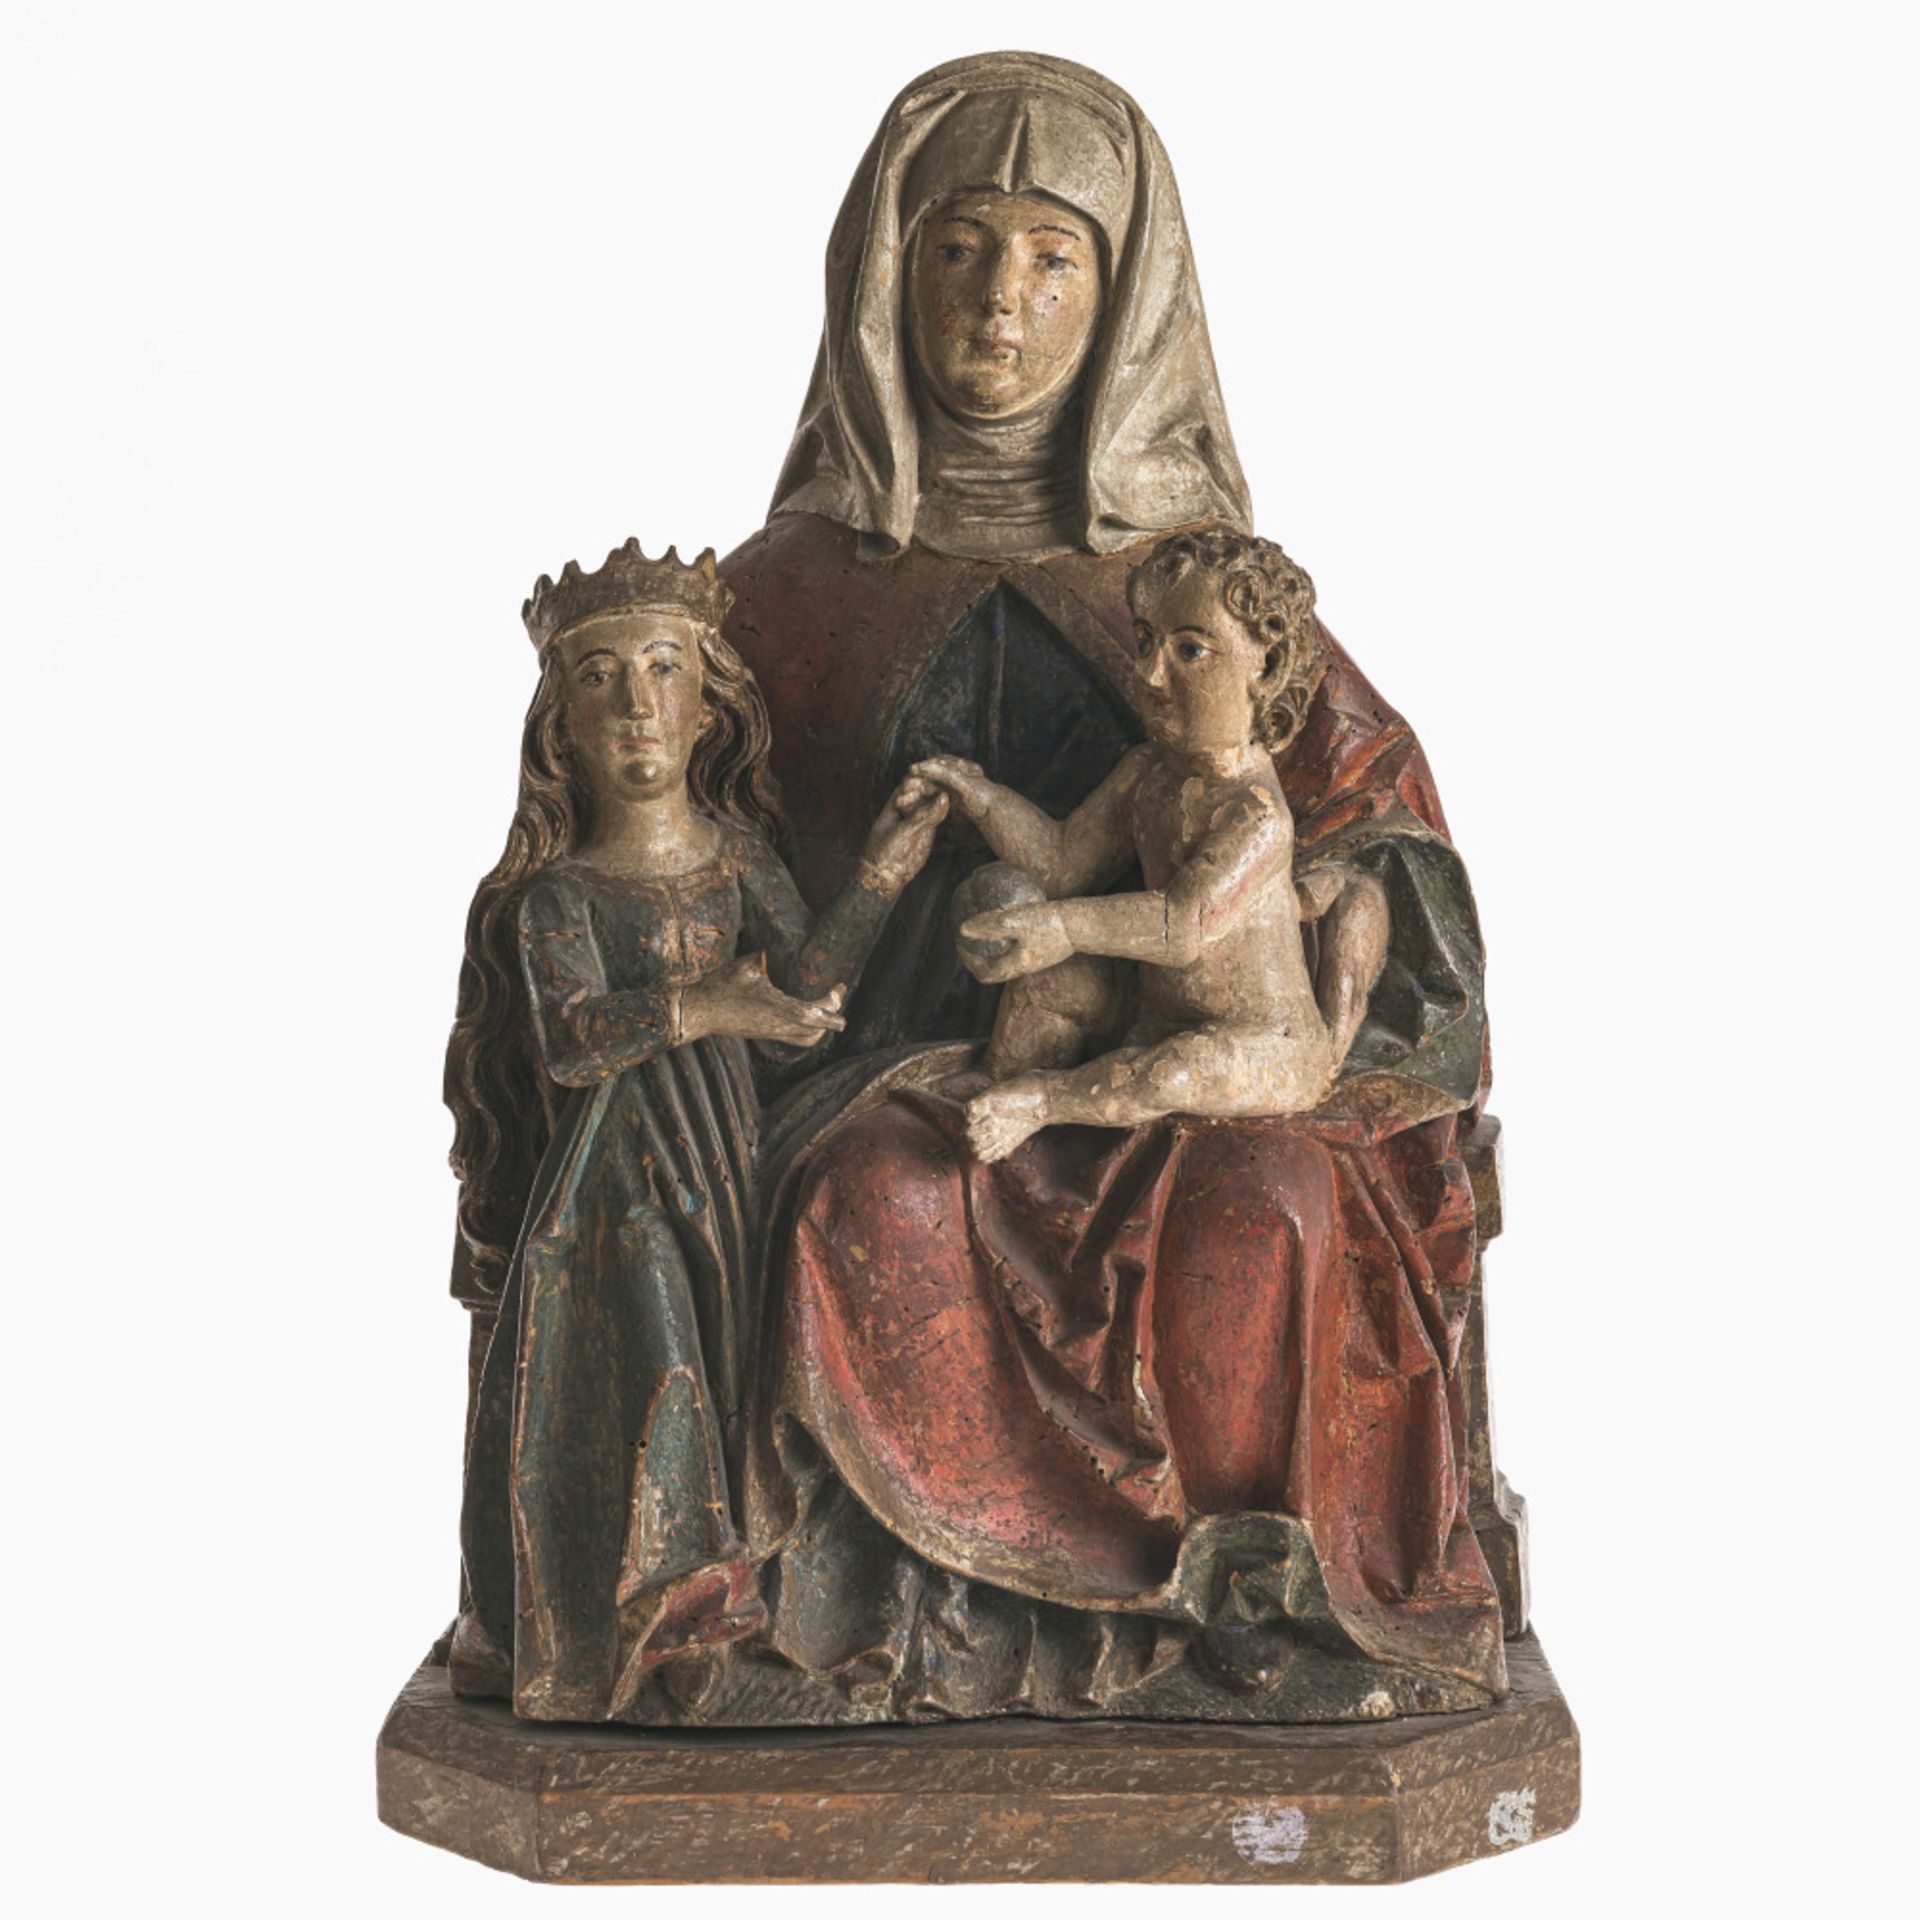 Virgin and Child with Saint Anne - Hans Herlin (worked in Memmingen circa 1500-1515), circa 1510